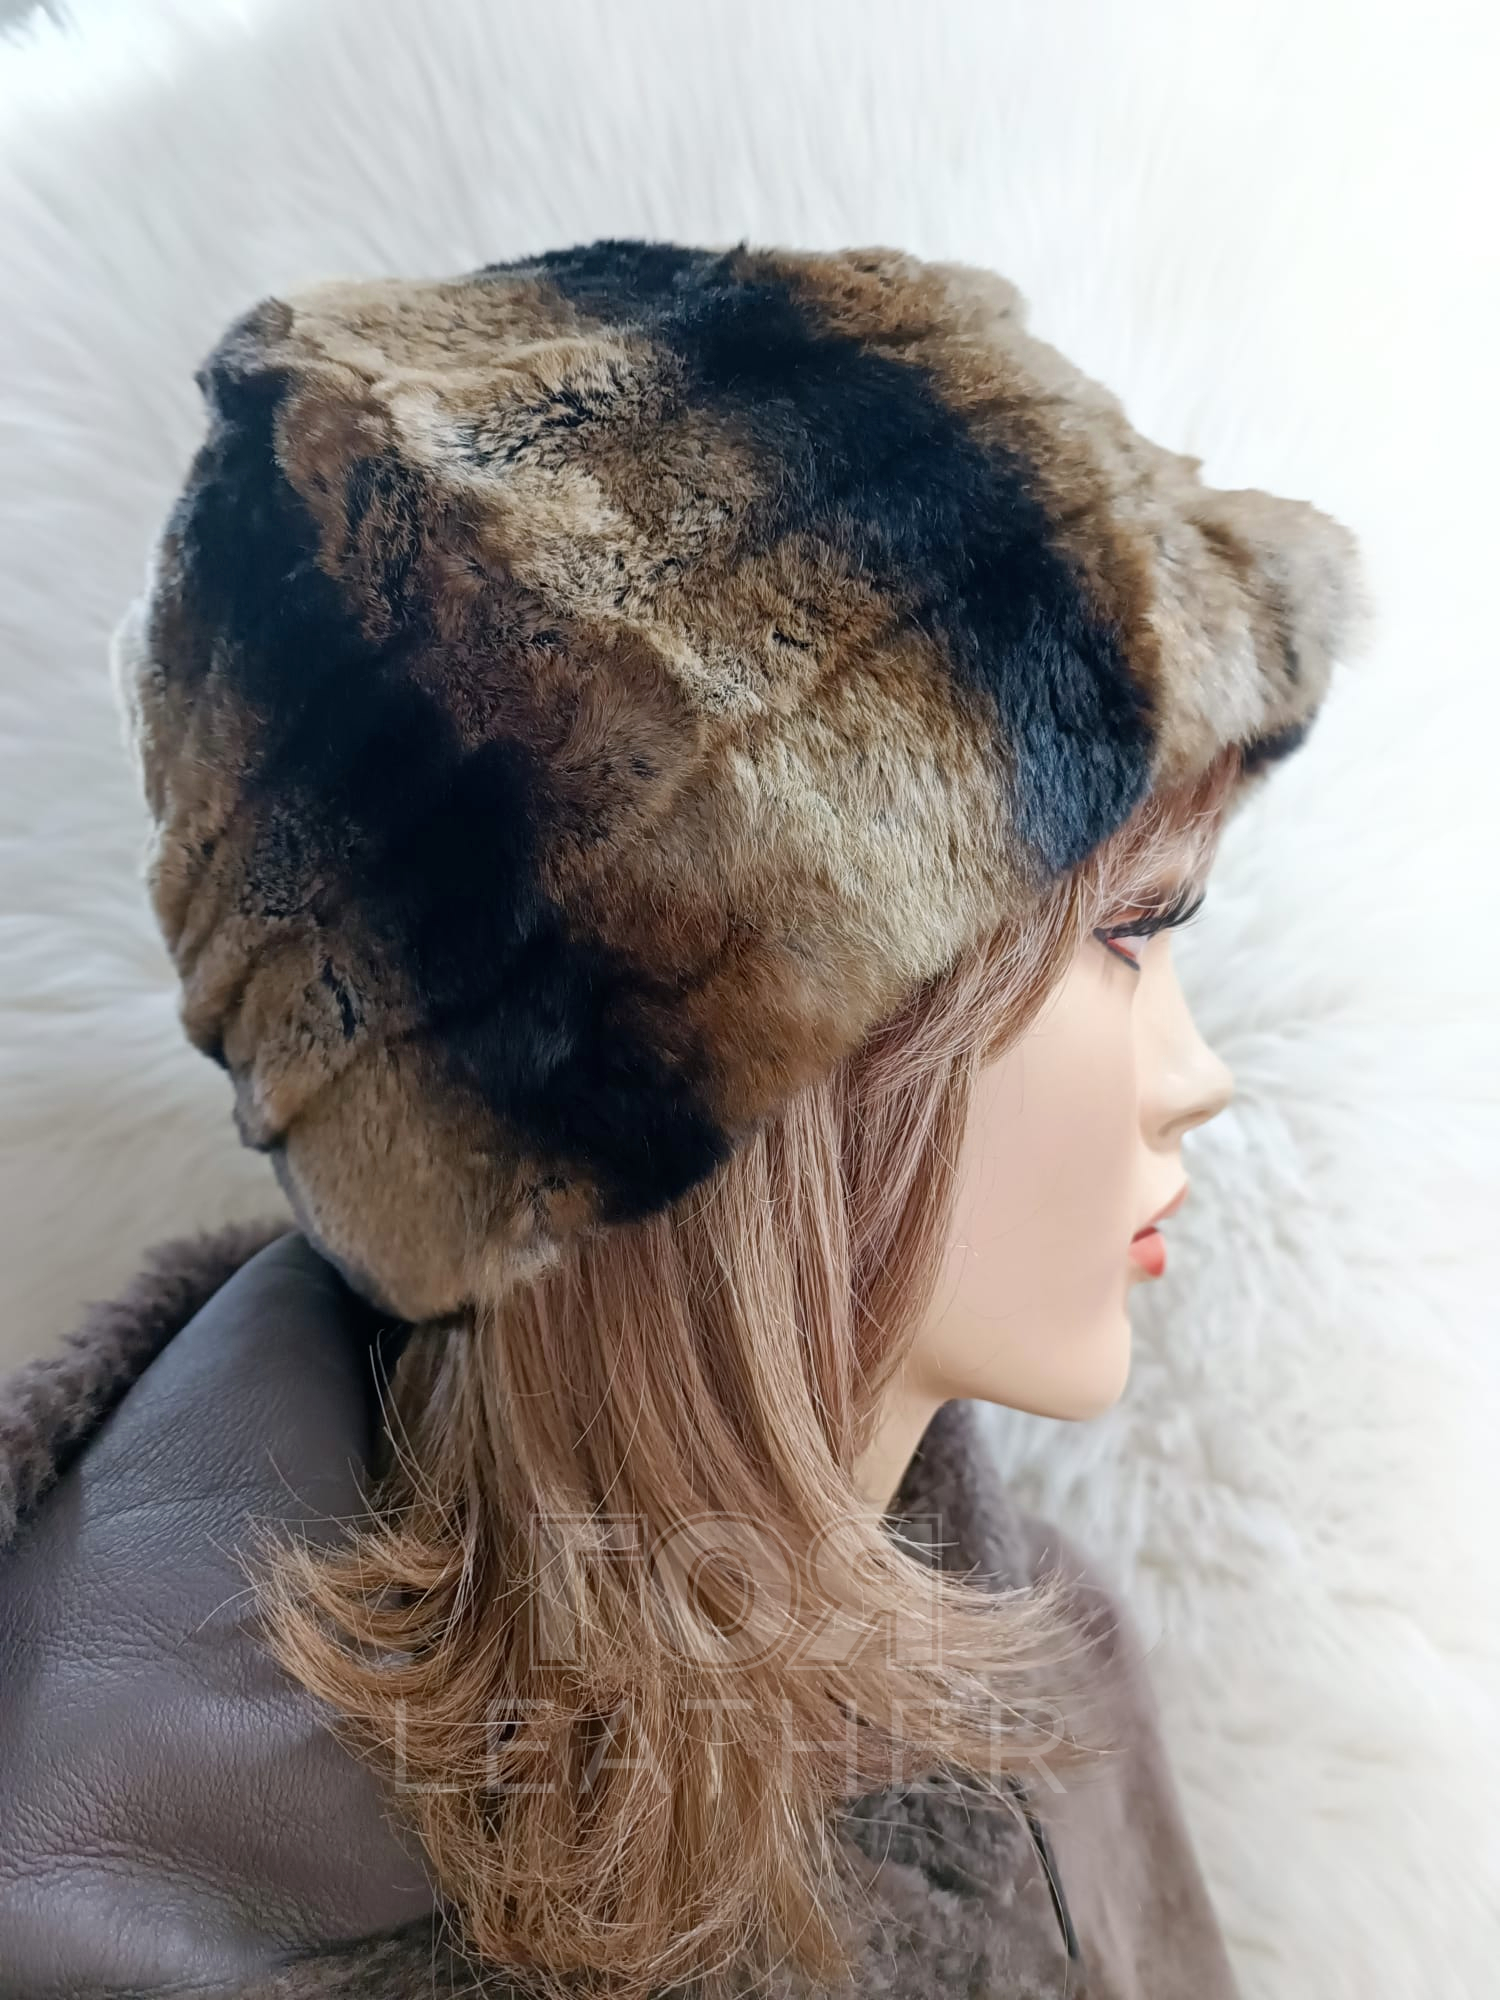 Дамска зимна кожена шапка от ГОЯ Leather. Моделът е изработен от 100% естествена кожа рекс-чинчила. Изключително лек и топъл, подходящ за студени зимни дни. От вътрешната част има шнур за пристягане и коригиране на размера.